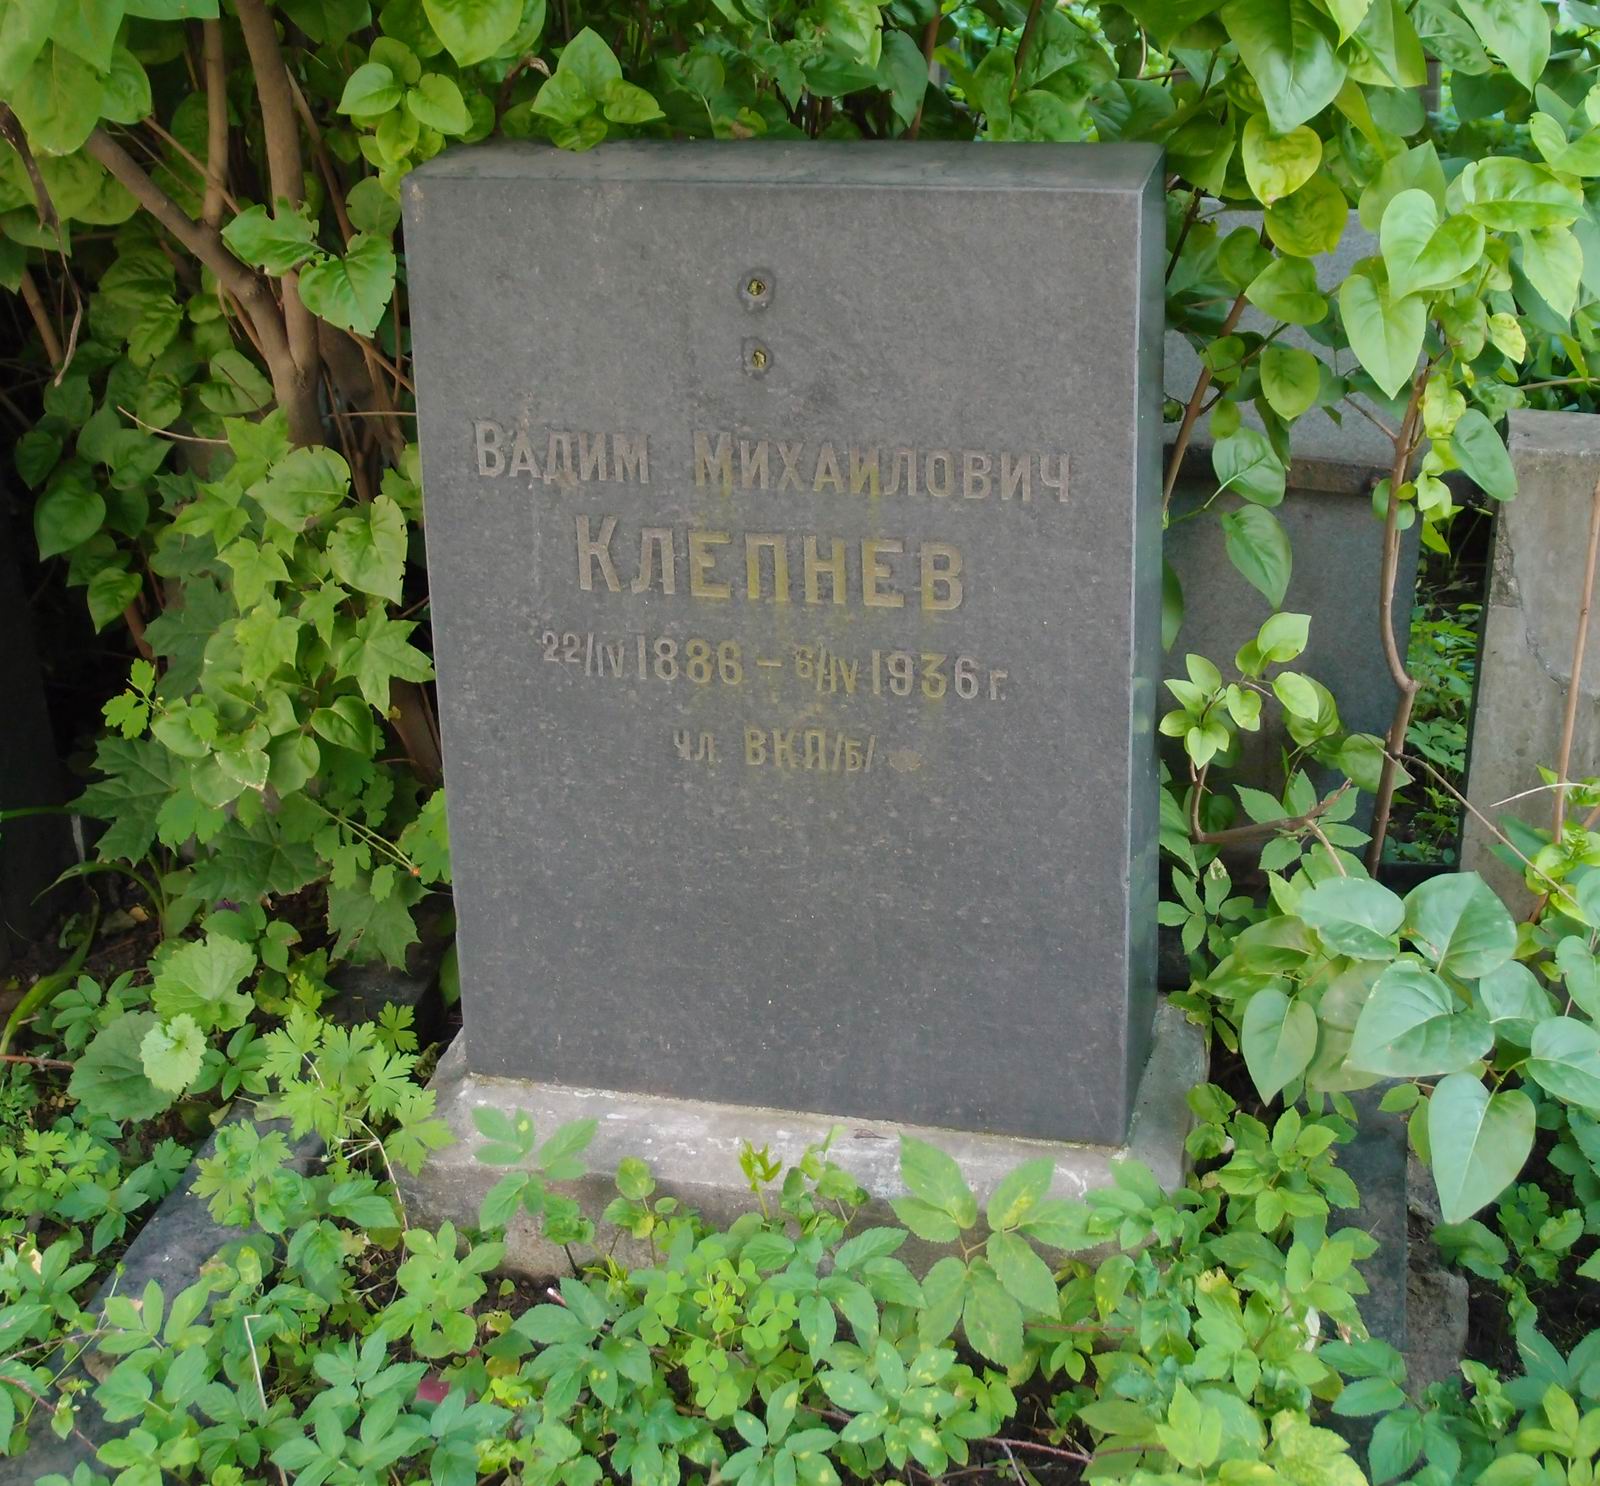 Памятник на могиле Клепнева В.М. (1886-1936), на Новодевичьем кладбище (3-64-30).